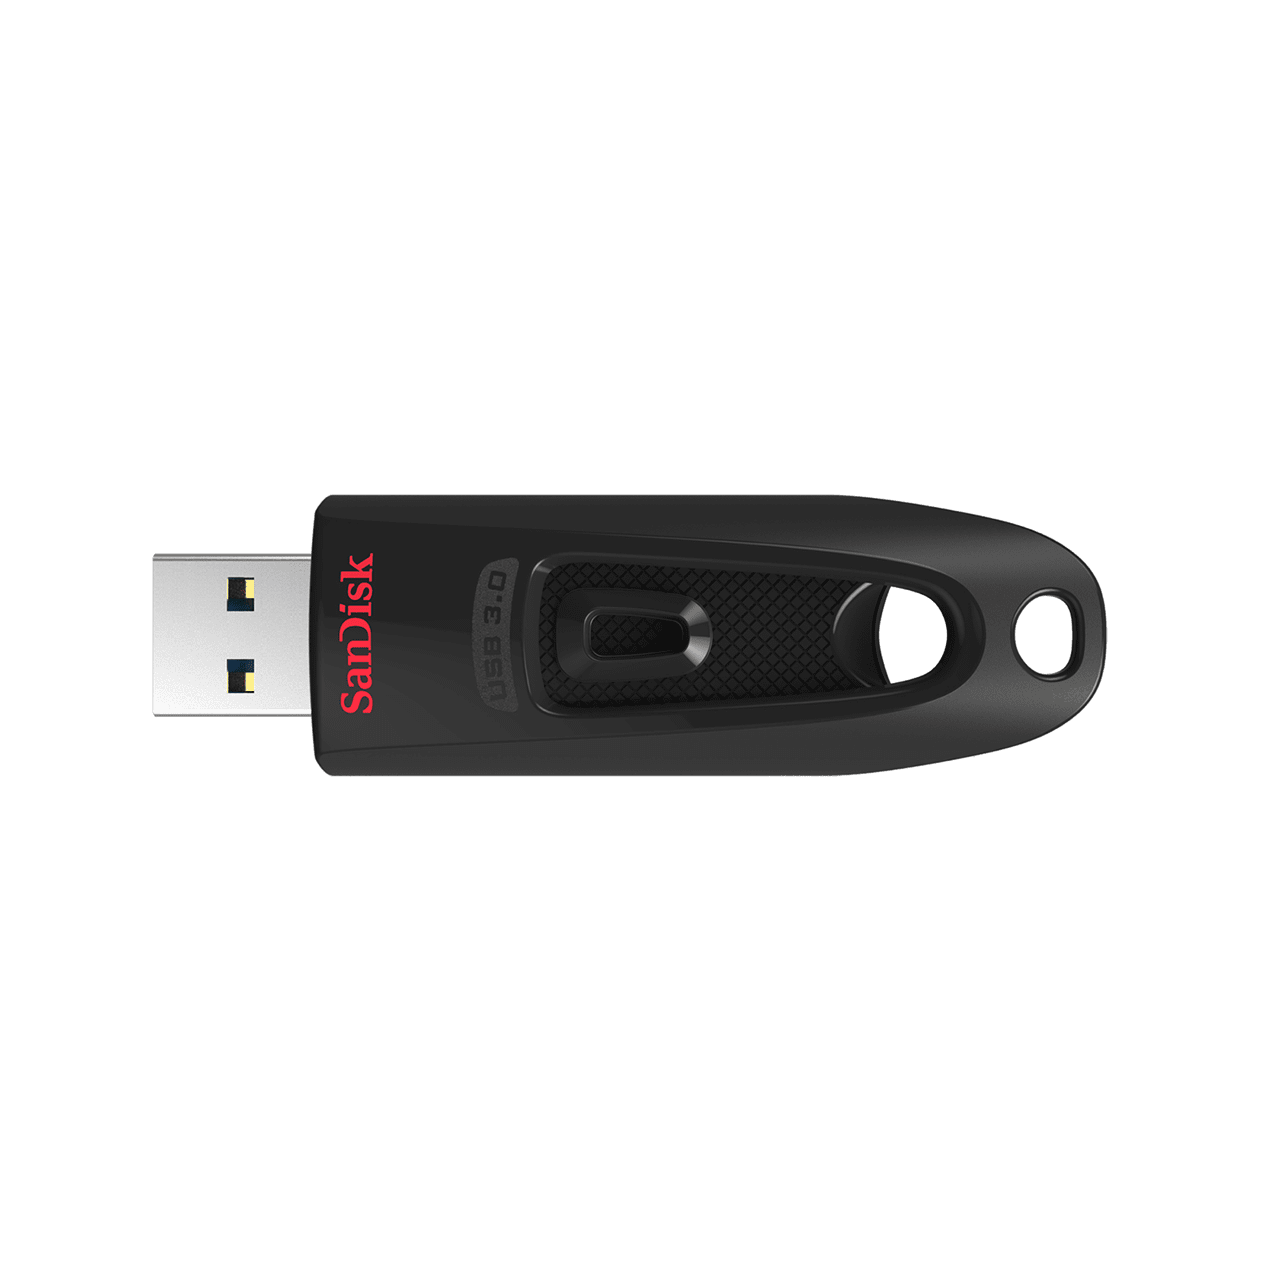 Sandisk Cruzer Ultra CZ48 16GB/32GB/64GB/128GB/256GB USB 3.0 Flash Drive (up to 100 MB/s) Pendrive